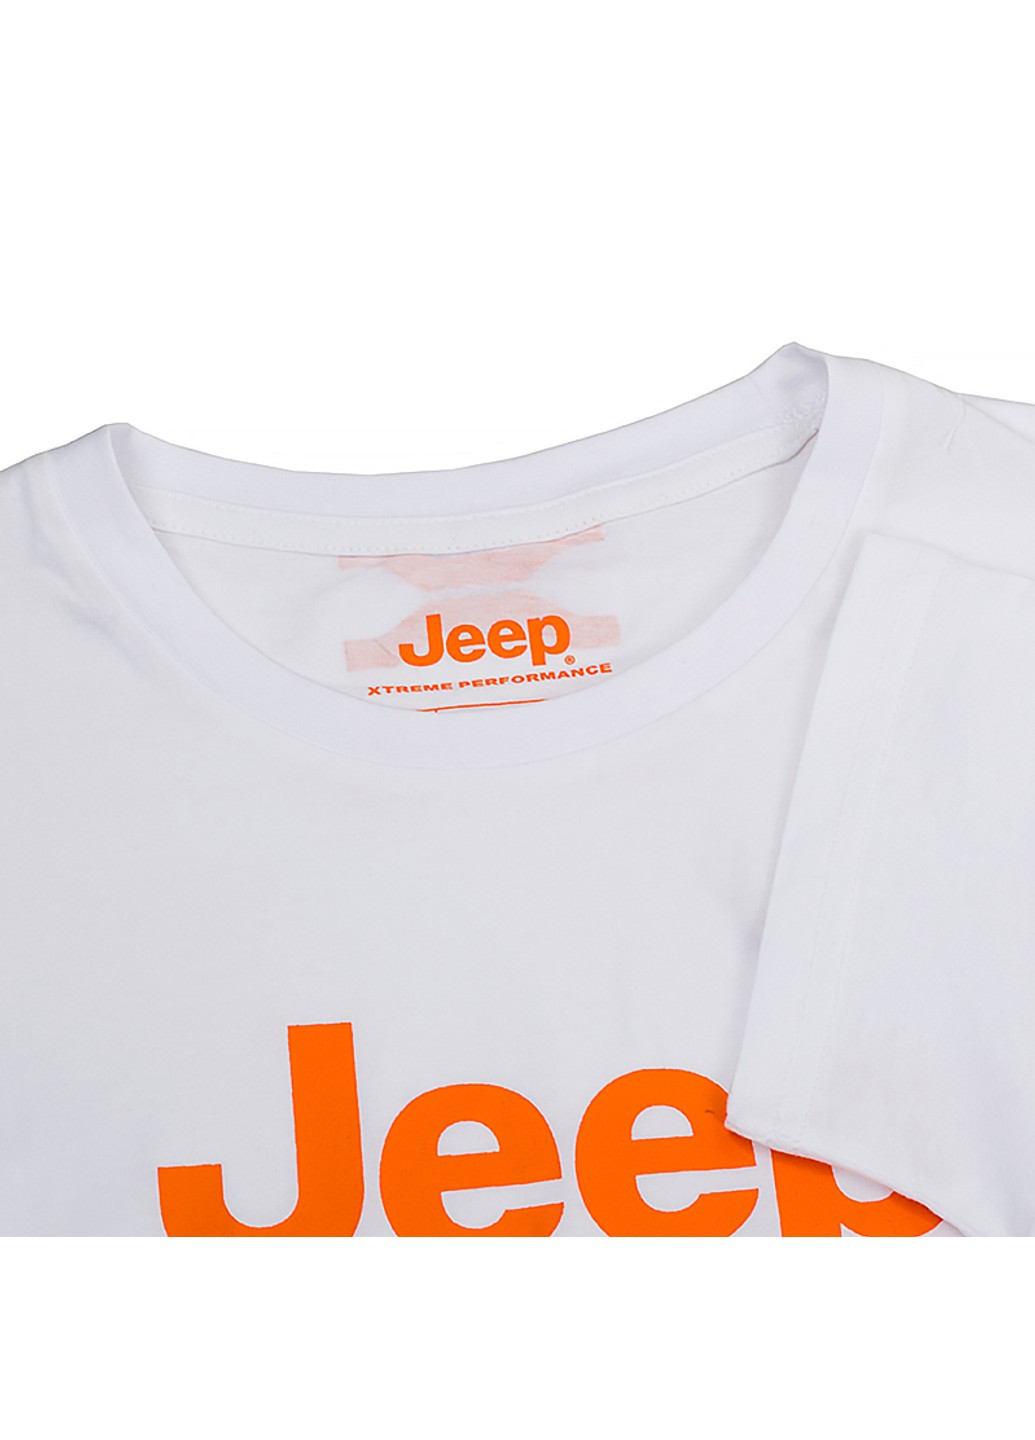 Біла футболка t-shirt xtreme performance print jx22a Jeep